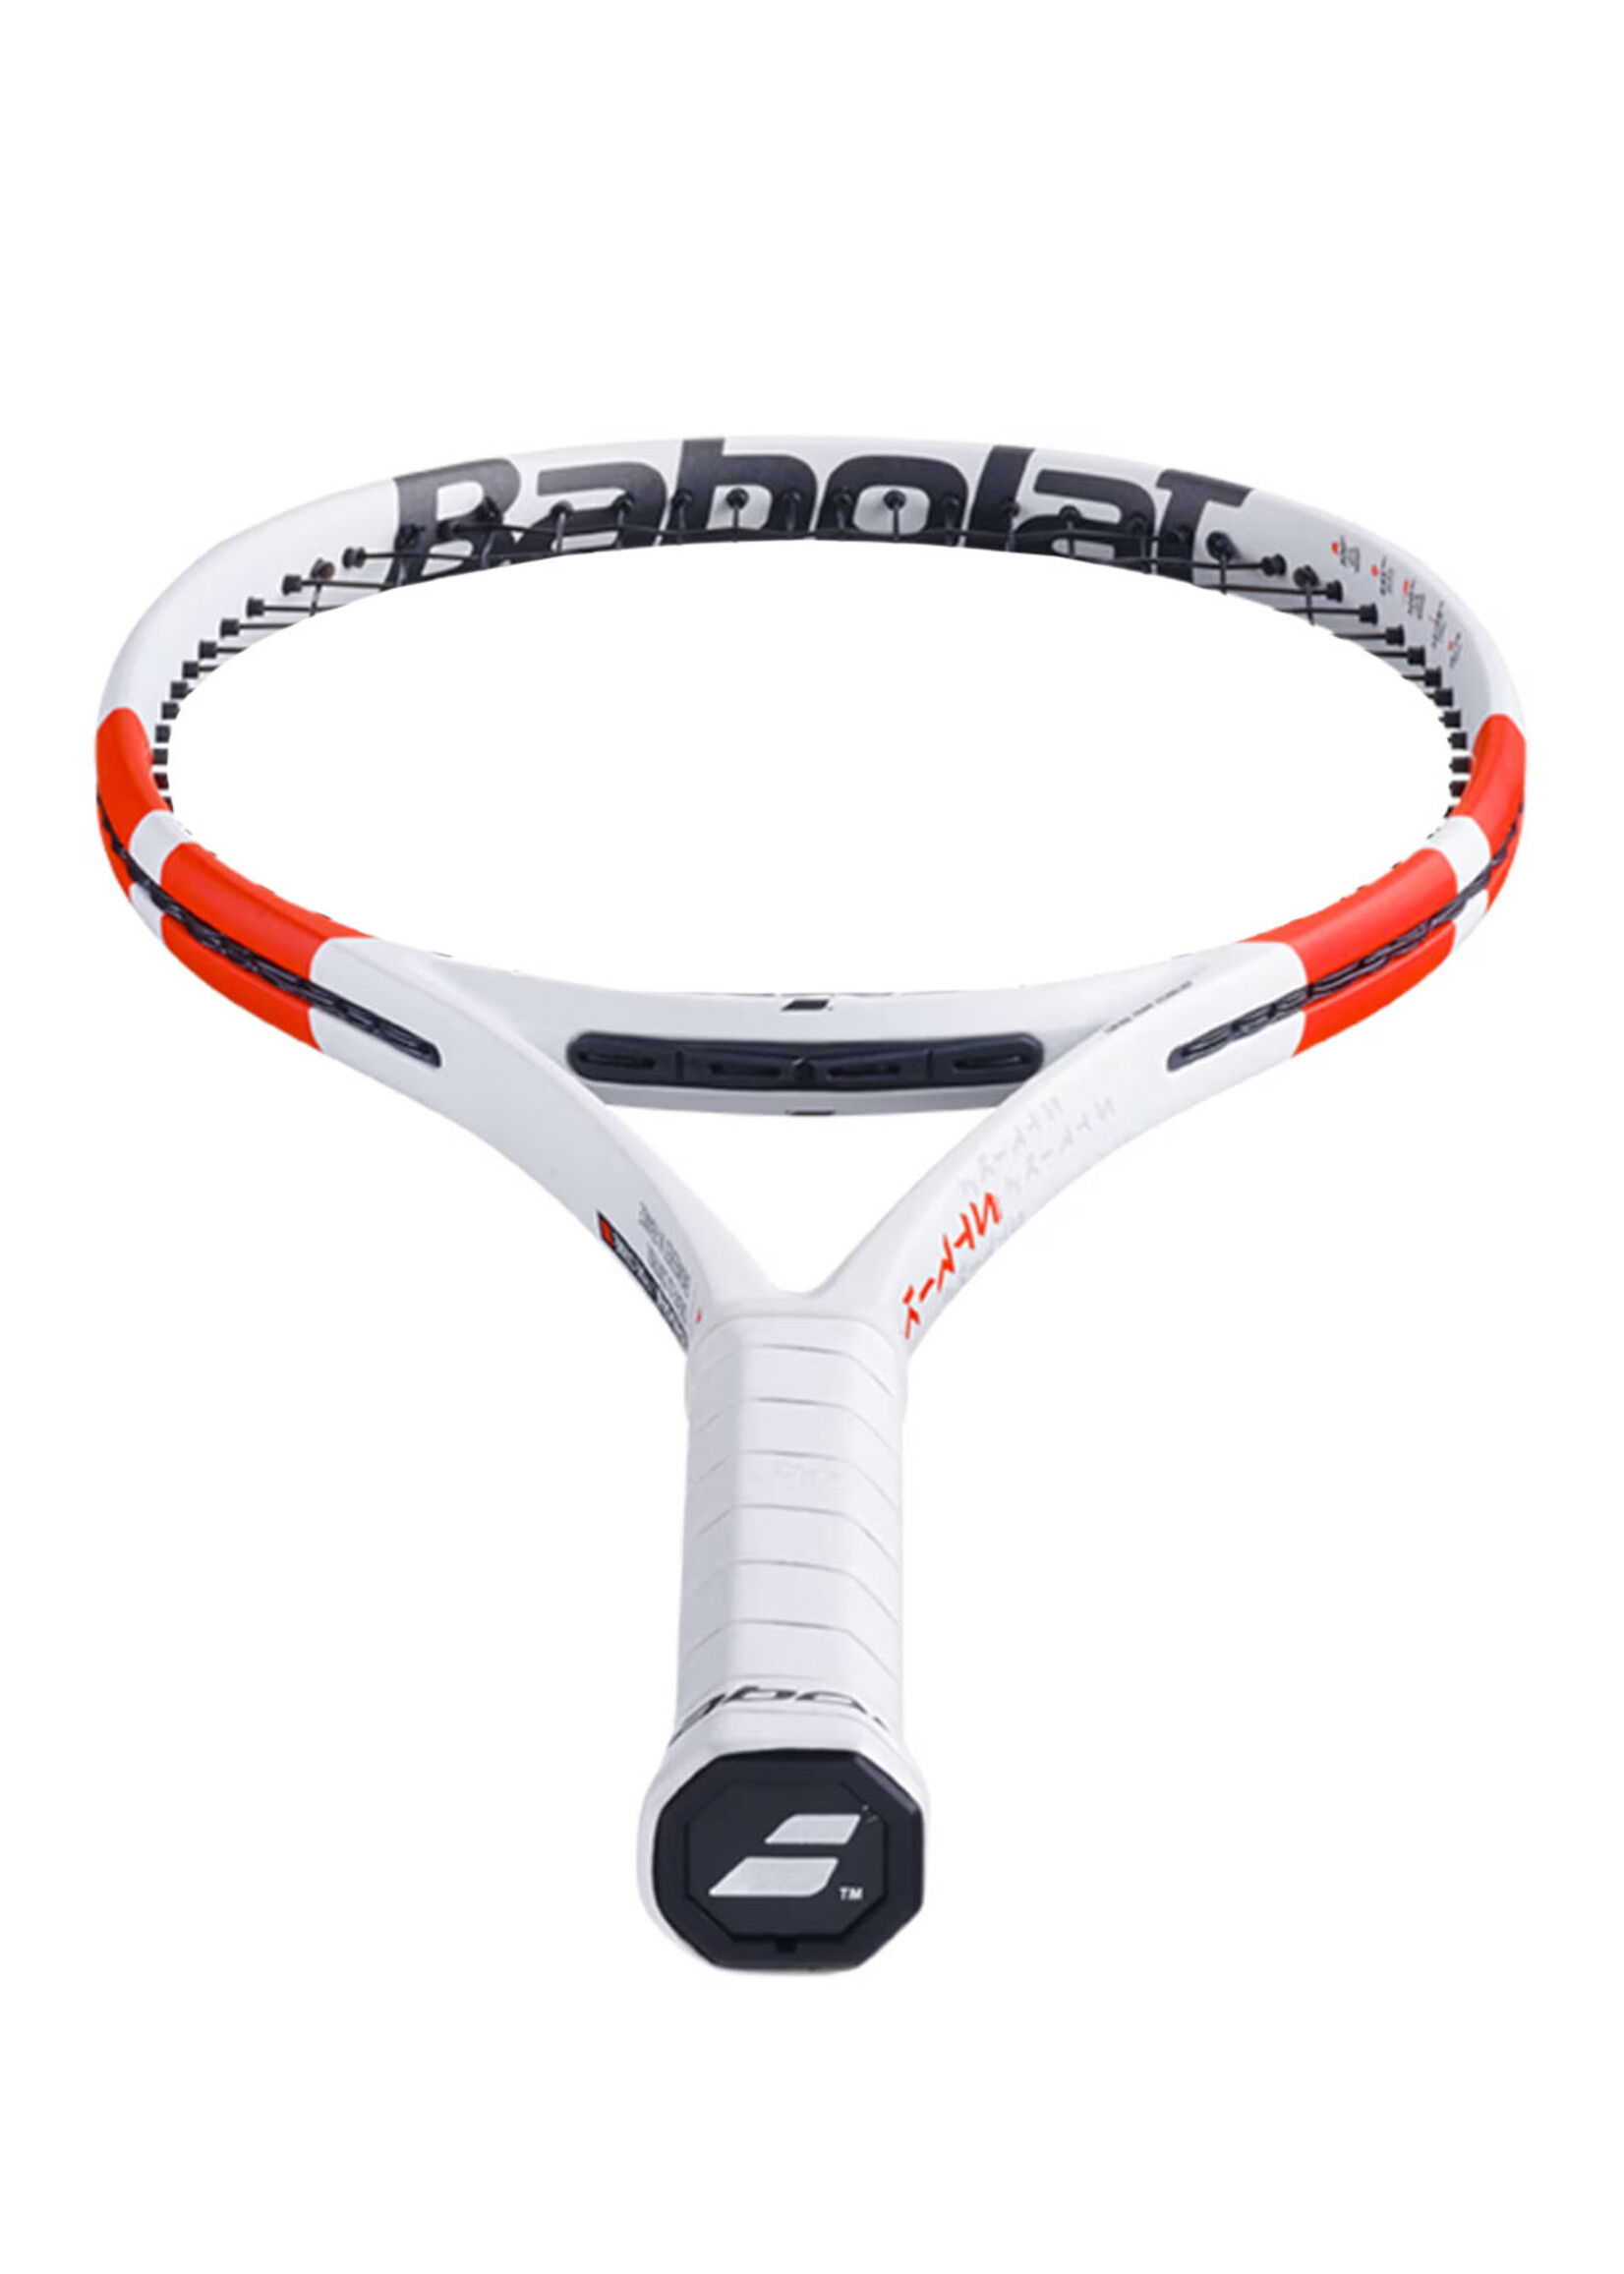 Babolat Babolat Pure Strike 100 (300g) Gen4 Tennis Racquet